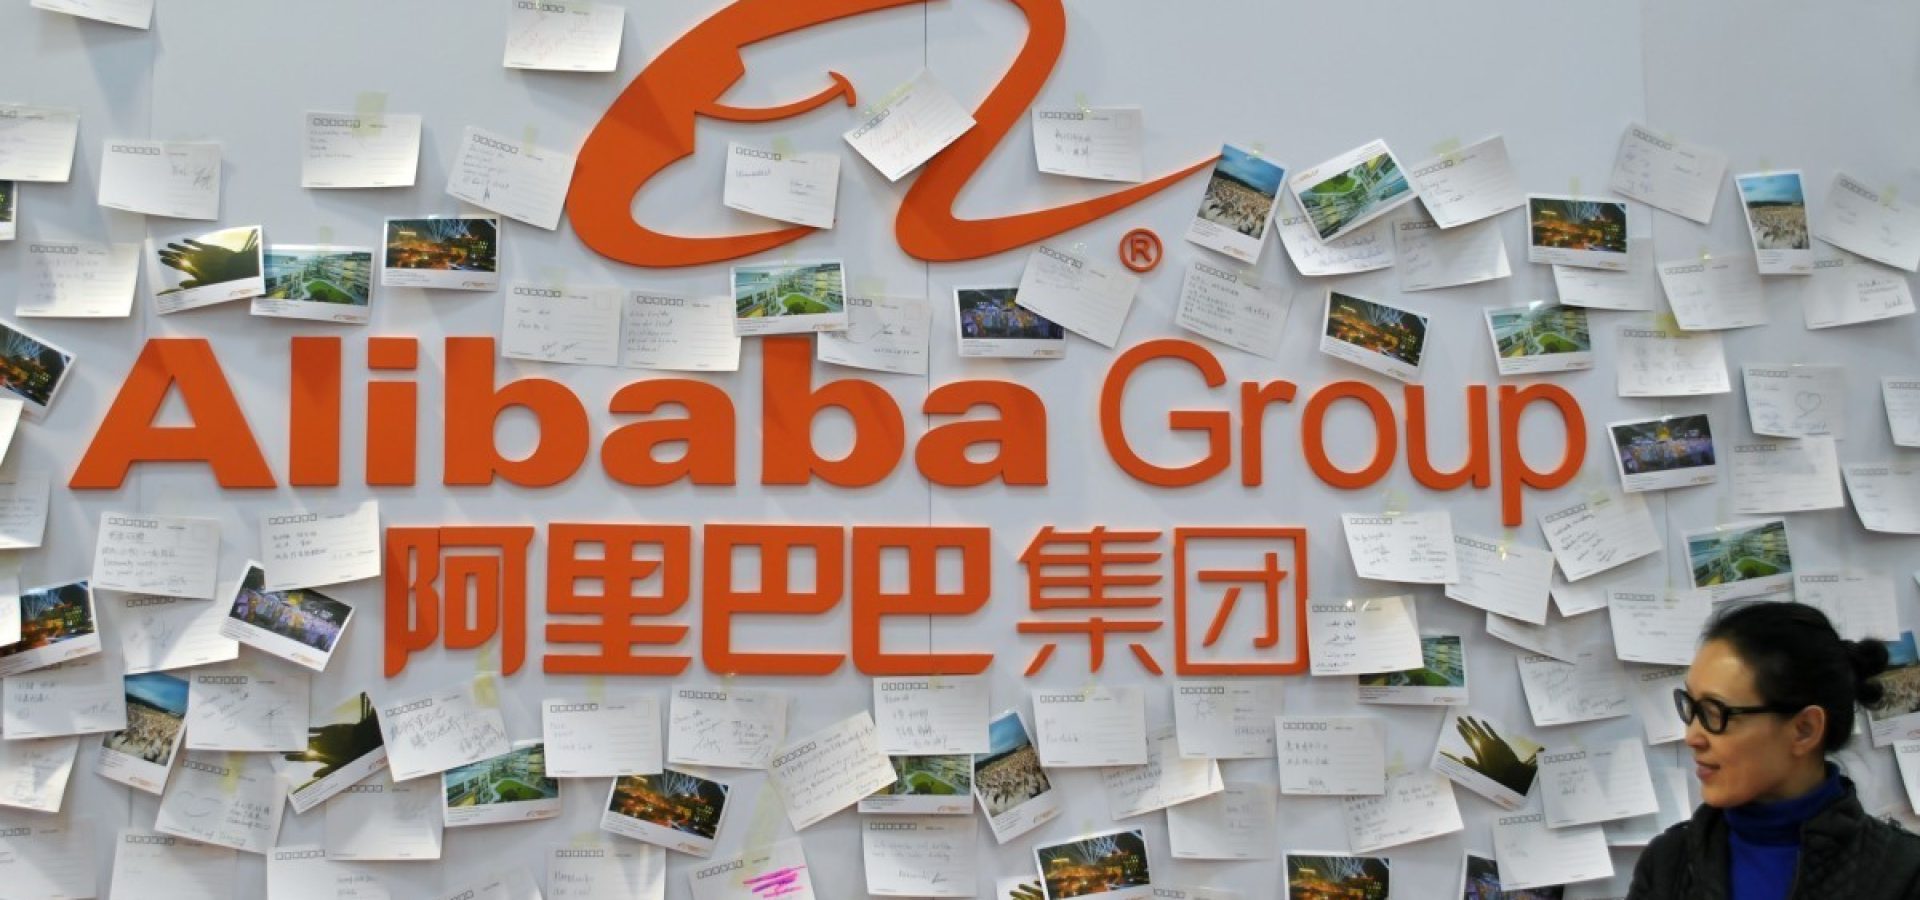 Alibaba and Chinese regulators